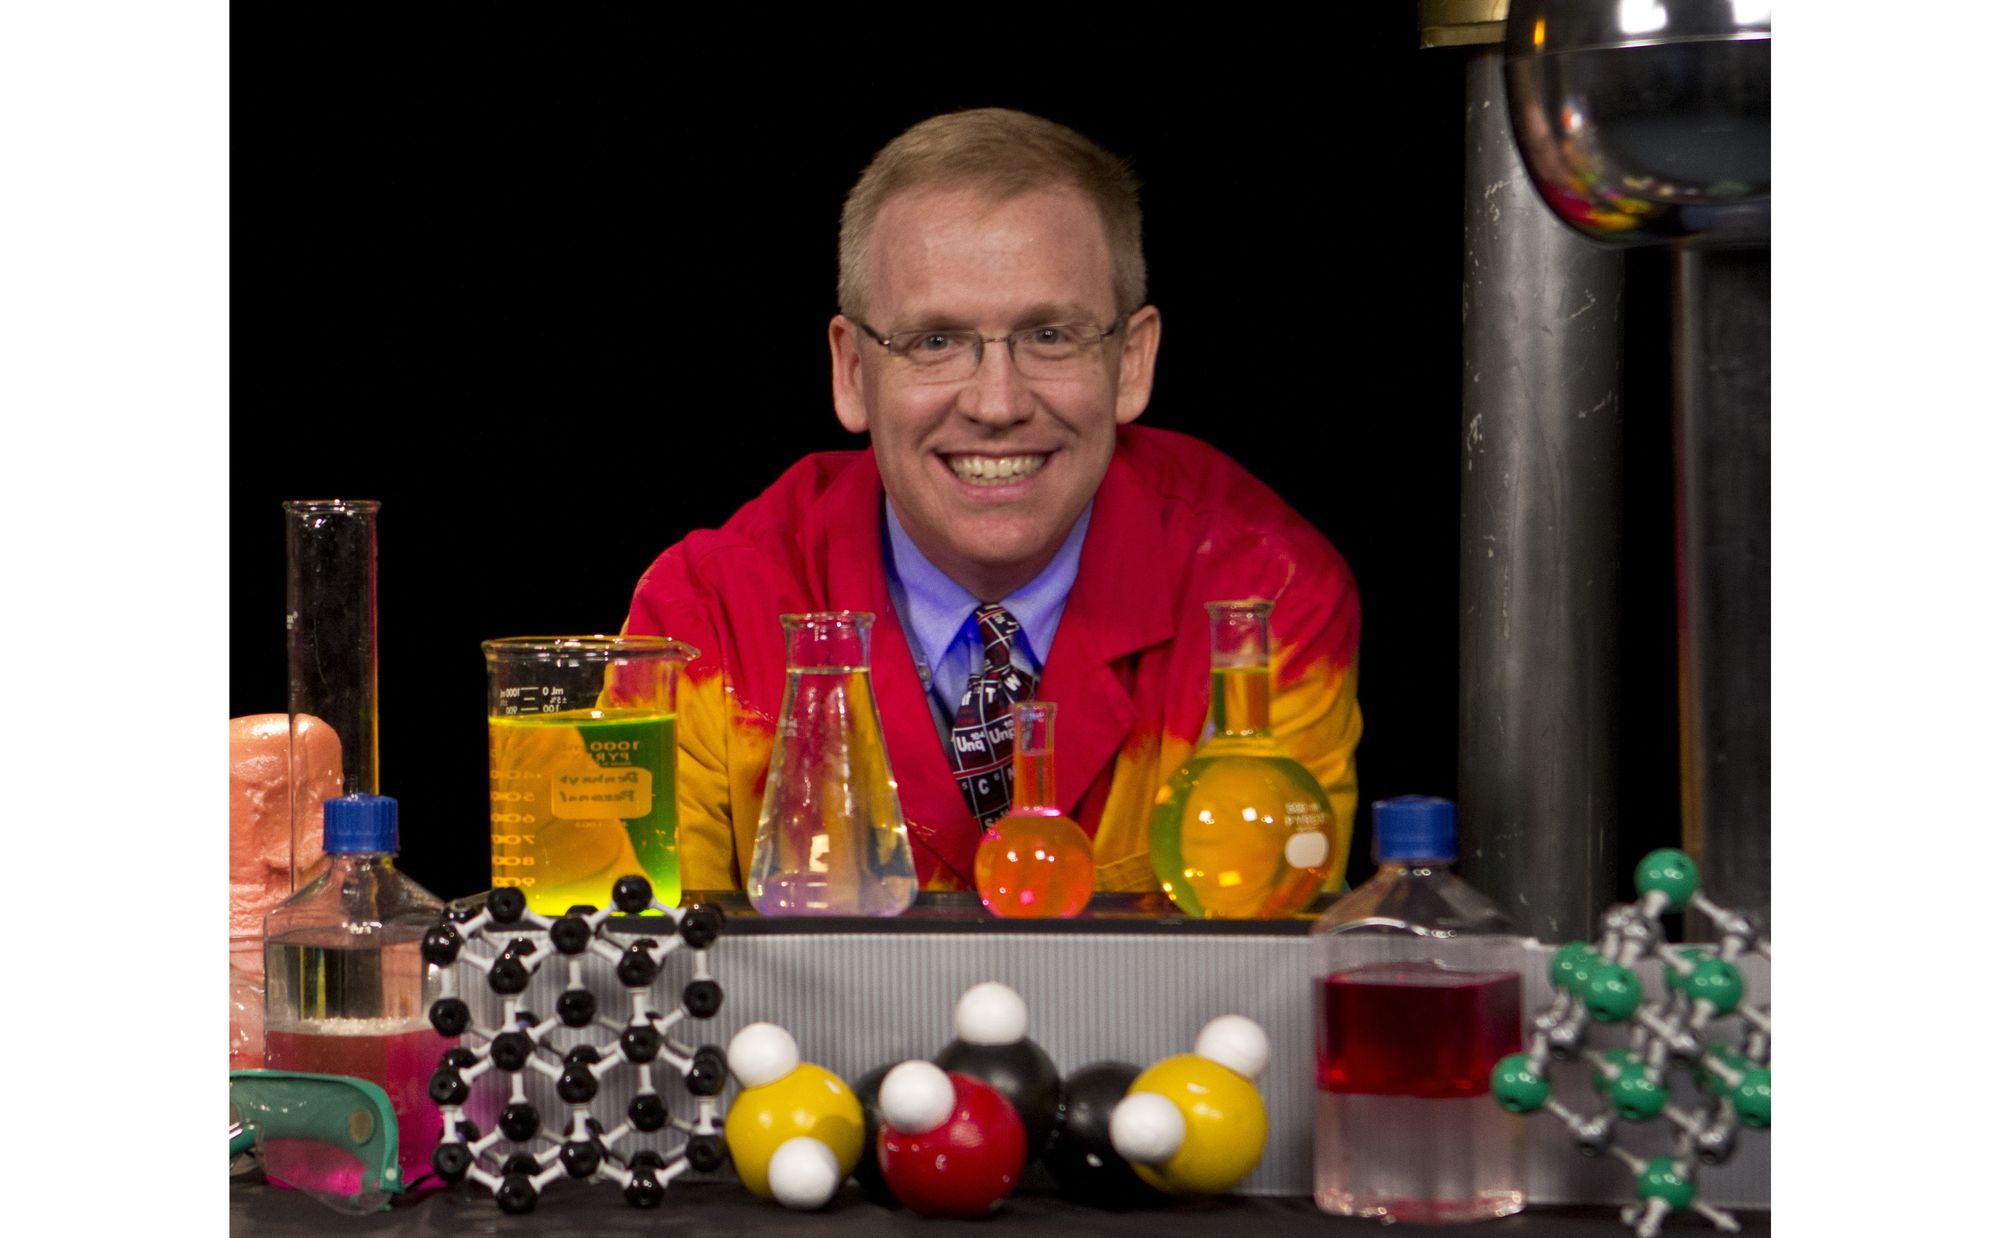 The Amazing Chemistry Show - Josh Denhart